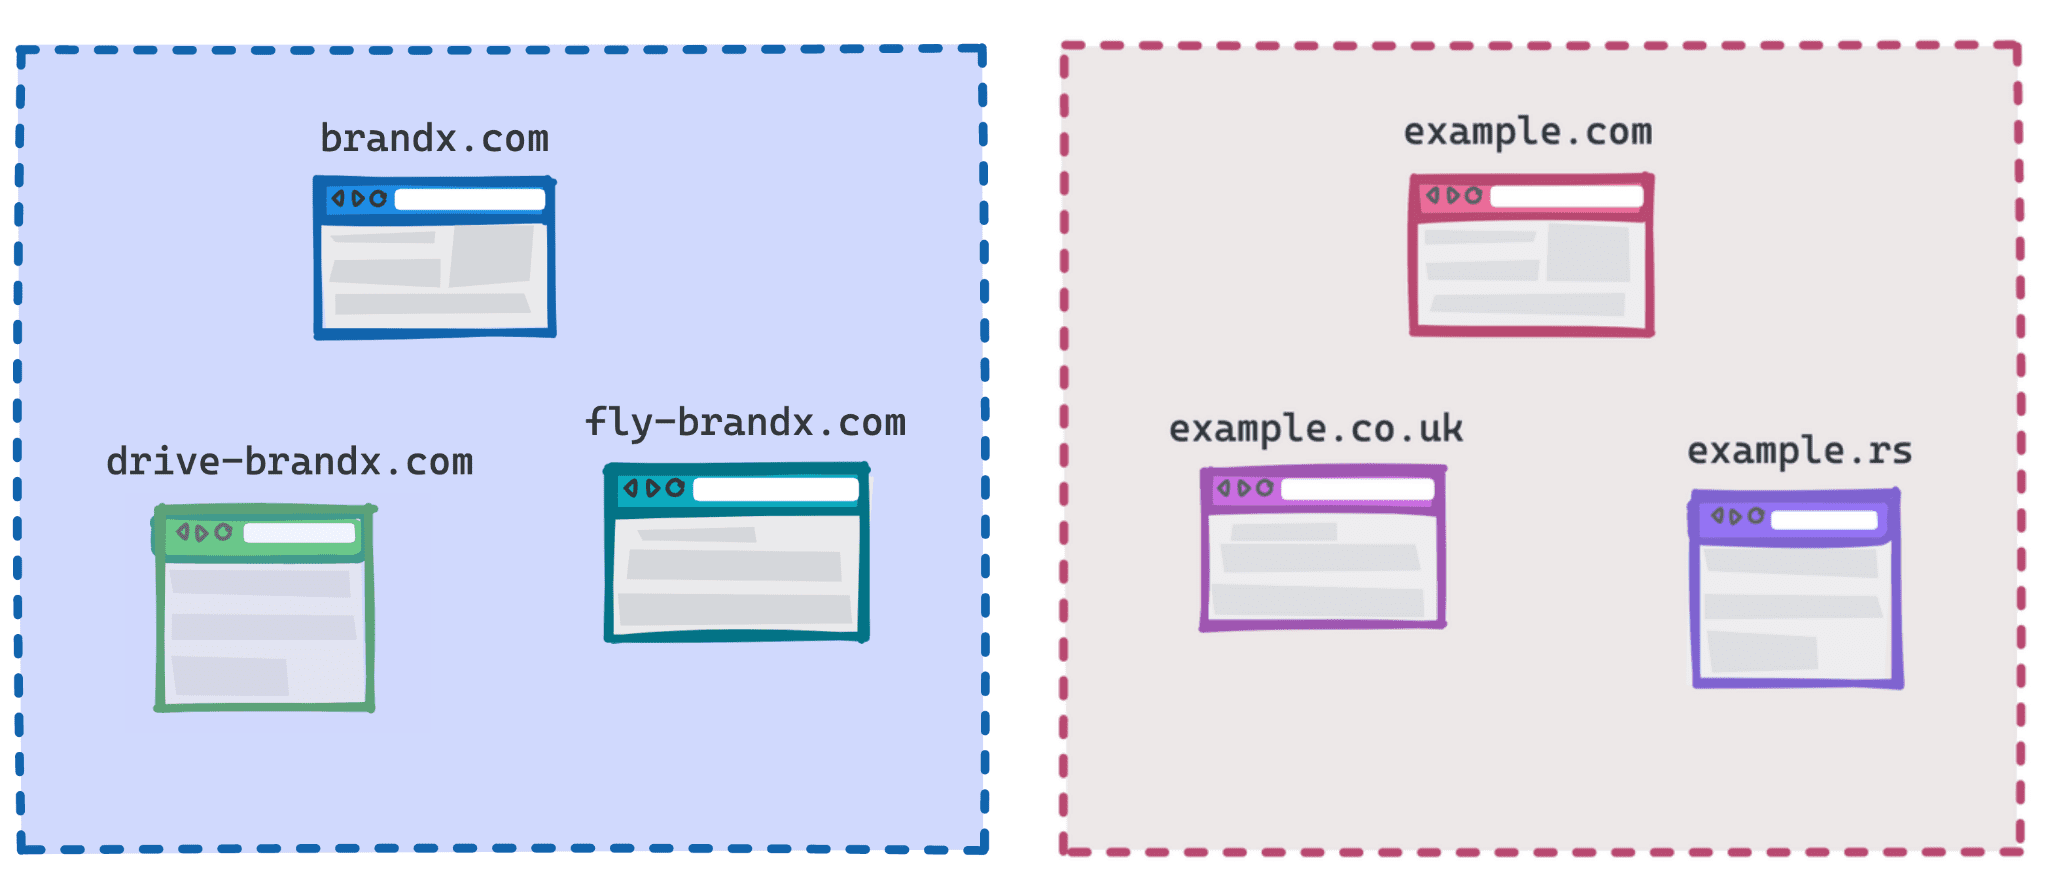 نموداری که brandx.com، fly-brandx.com و drive-brandx.com را به عنوان یک گروه و example.com، example.rs، example.co.uk را به عنوان گروه دیگر نشان می دهد.